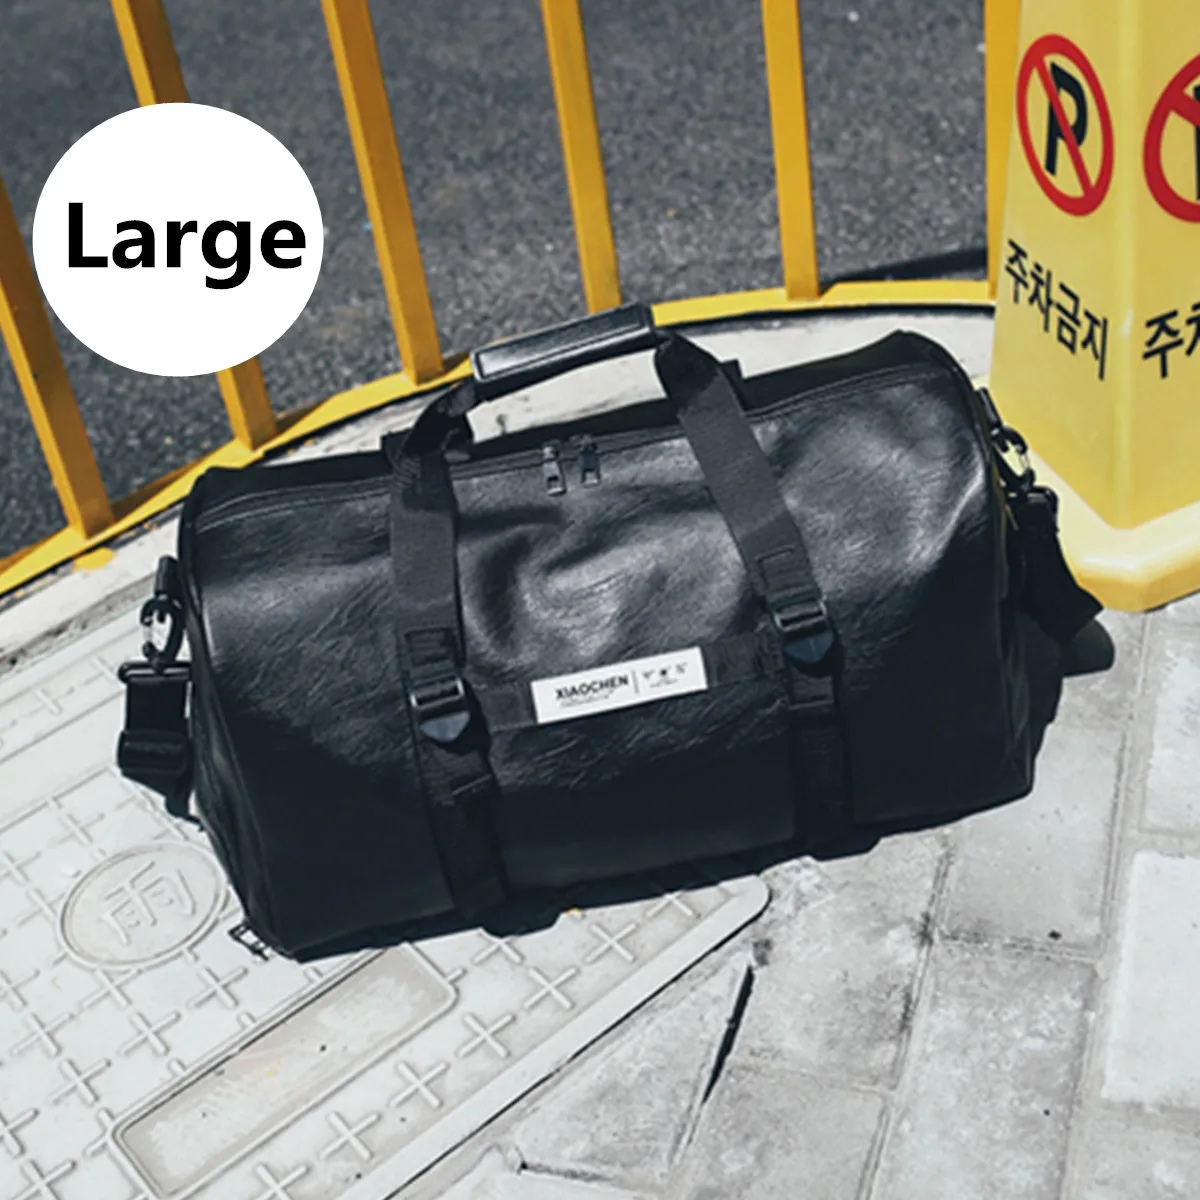 Дорожная сумка с карманами для обуви из искусственной кожи, Большая вместительная сумка, черный багаж для мужчин и женщин, спортивная сумка, посылка, черная сумка - Цвет: Large